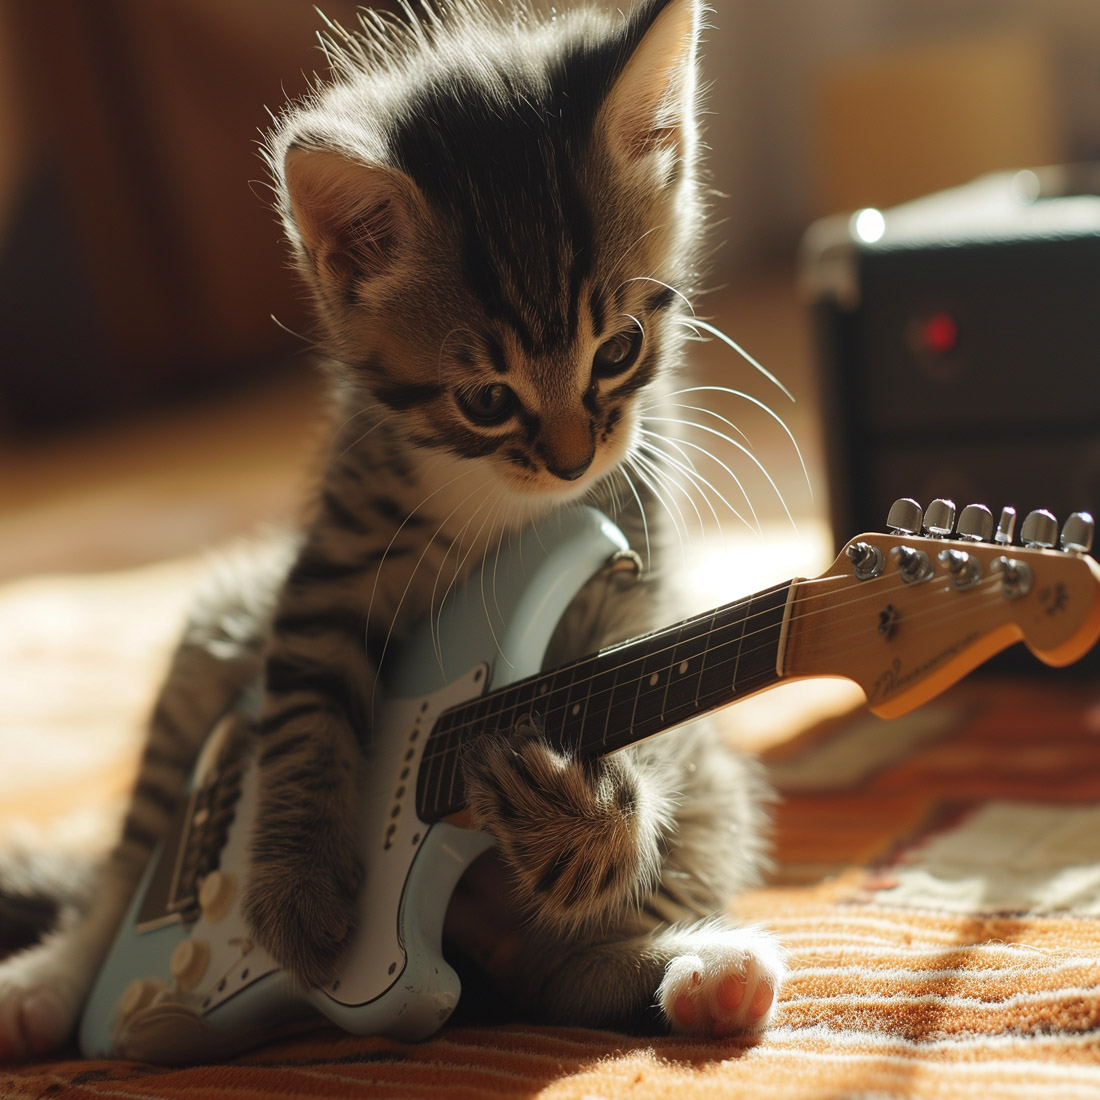 kitten playing guitar 119